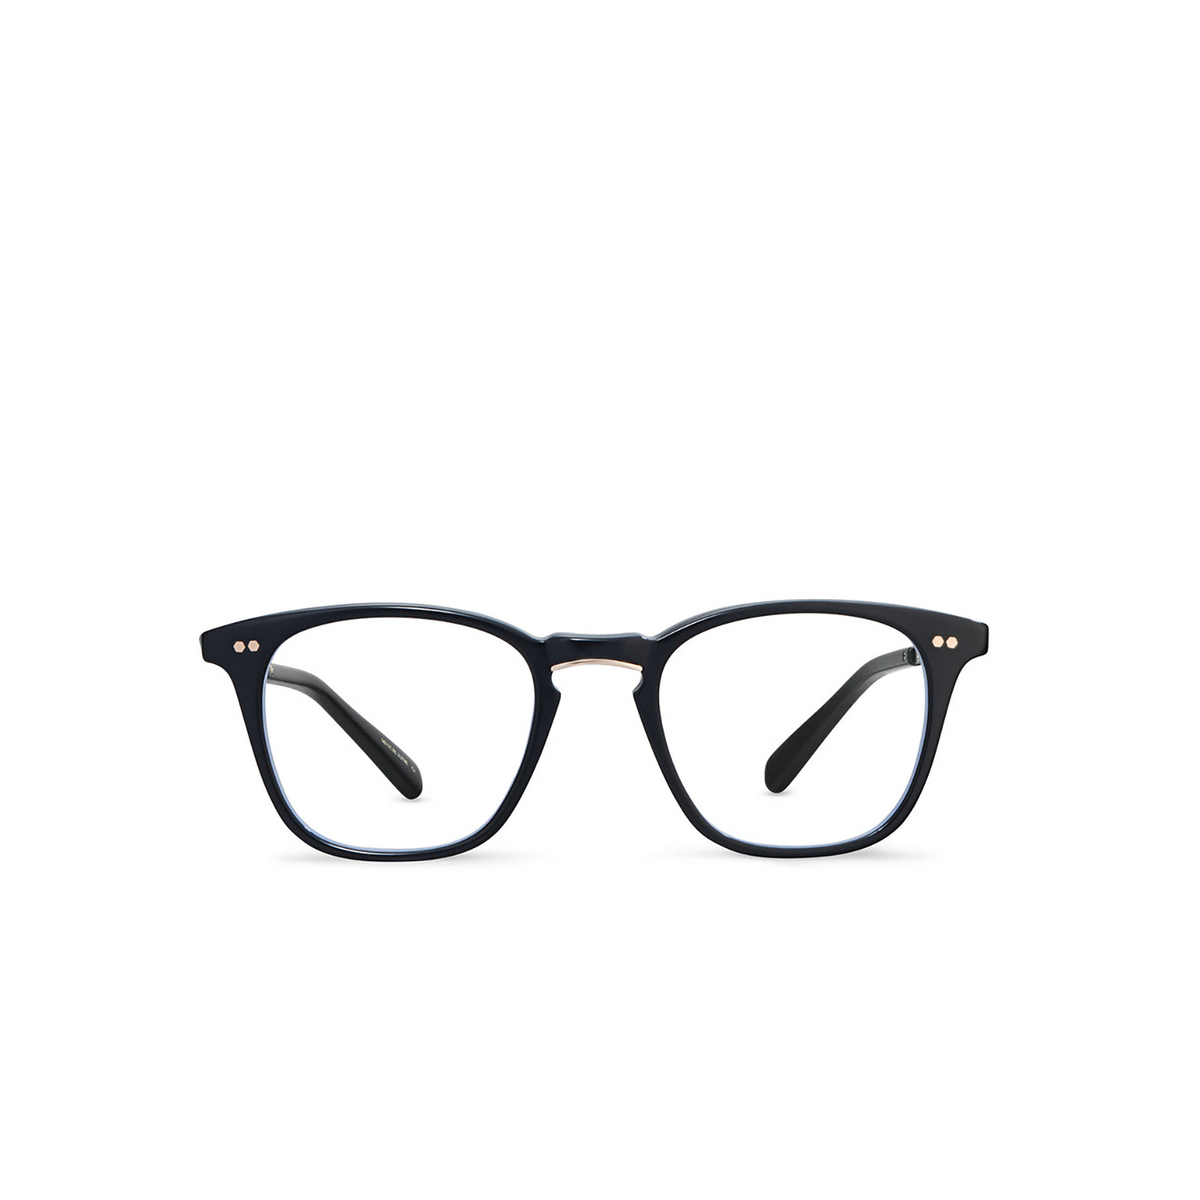 Mr. Leight GETTY C Eyeglasses BK-12KG Black-12K White Gold - front view